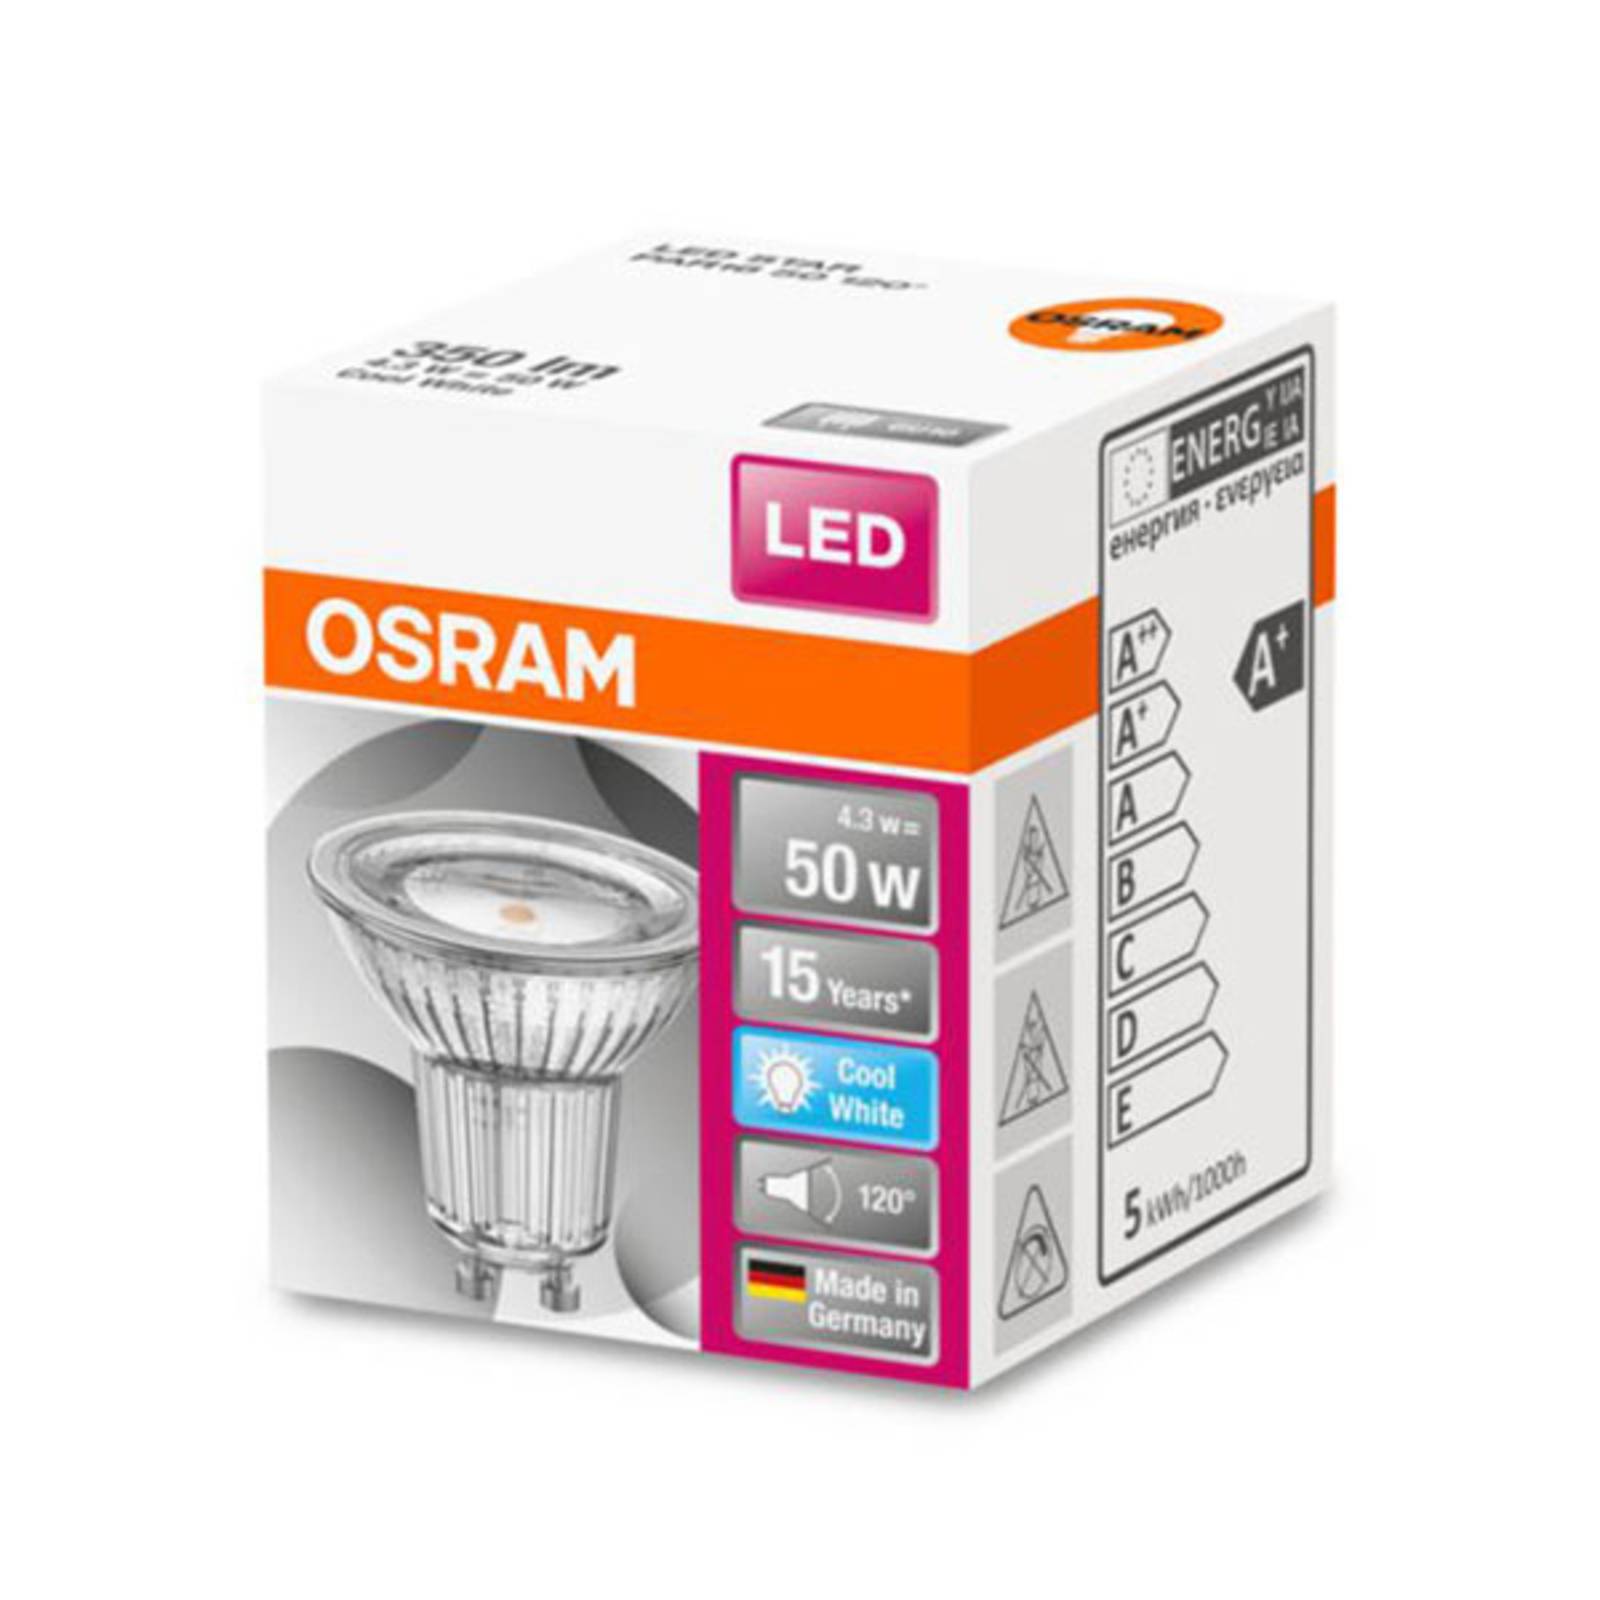 OSRAM LED-Reflektor GU10 4,3W universalweiß 120°